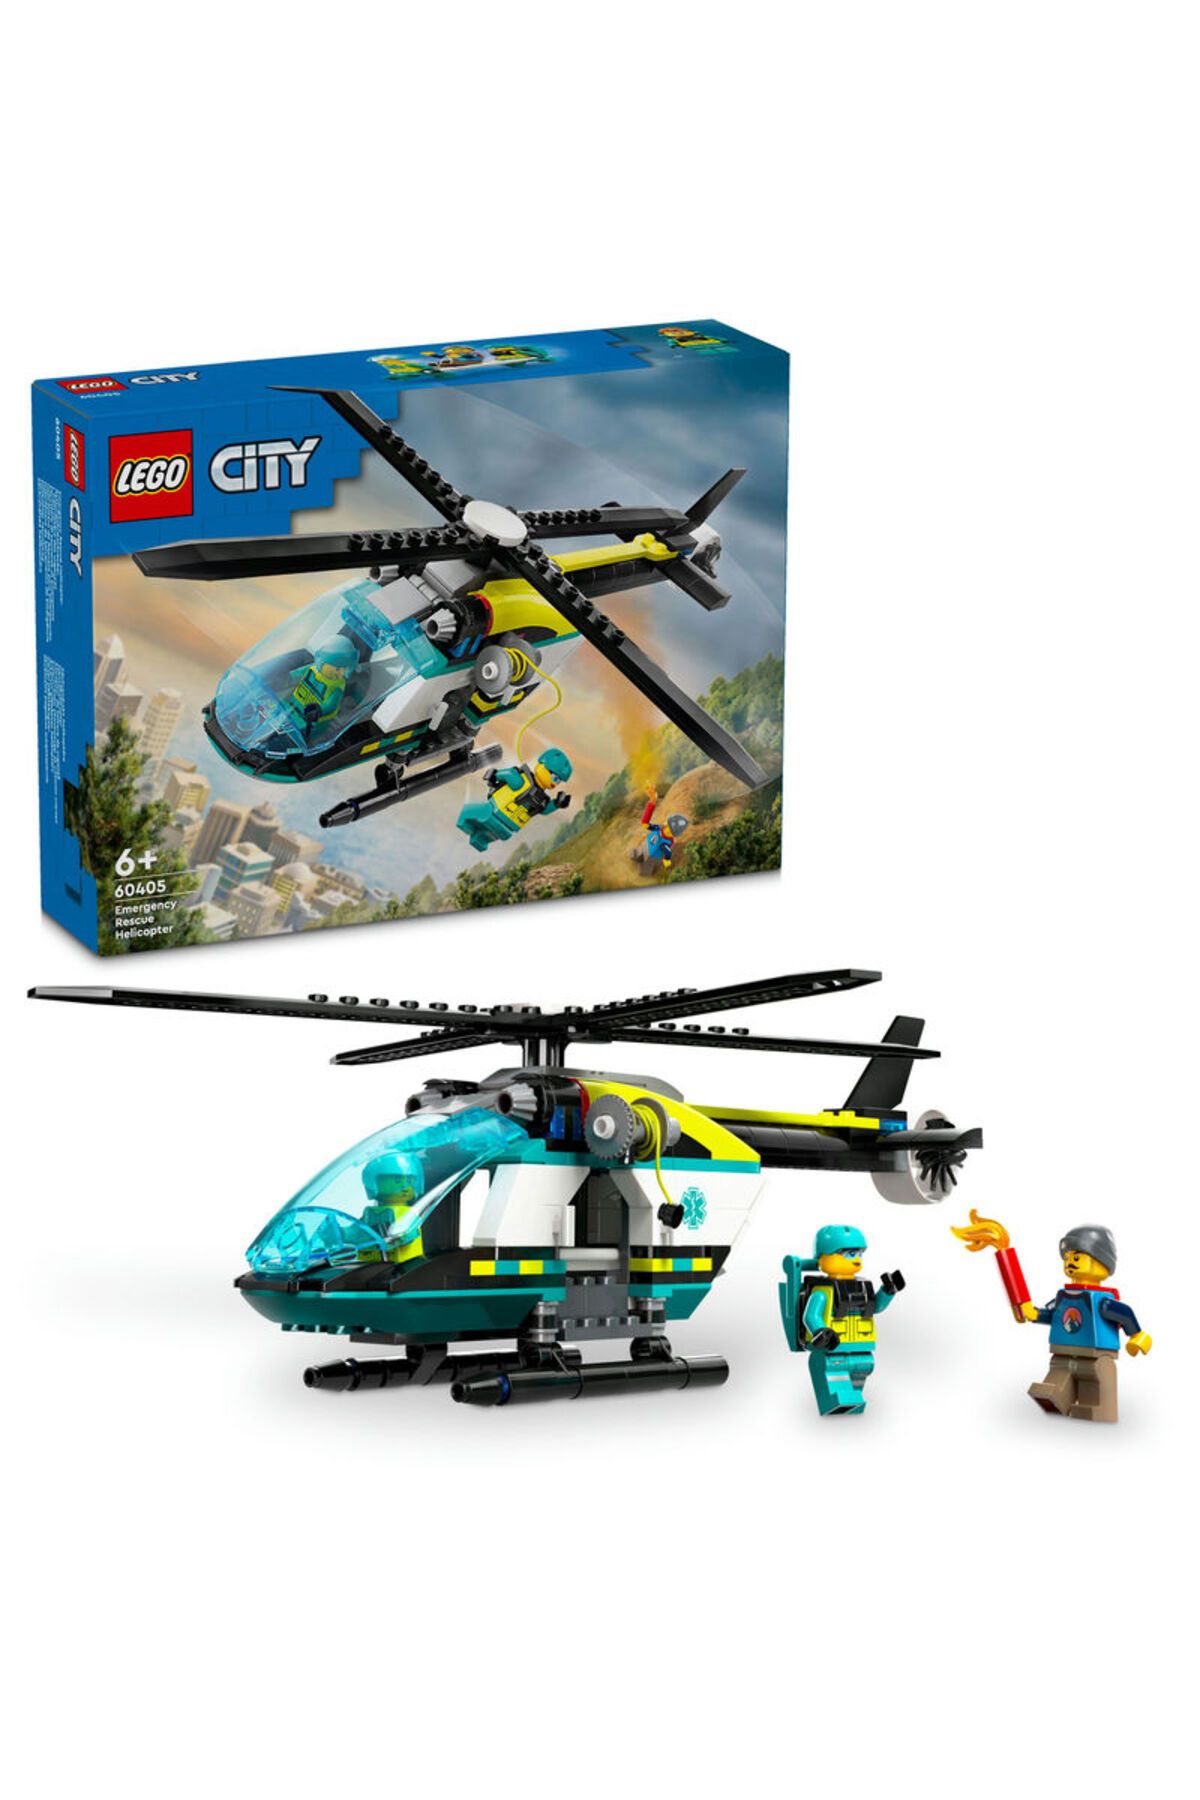 LEGO ® City Acil Kurtarma Helikopteri 60405  - 6 Yaş ve Üzeri İçin Yapım Seti (226 Parça)